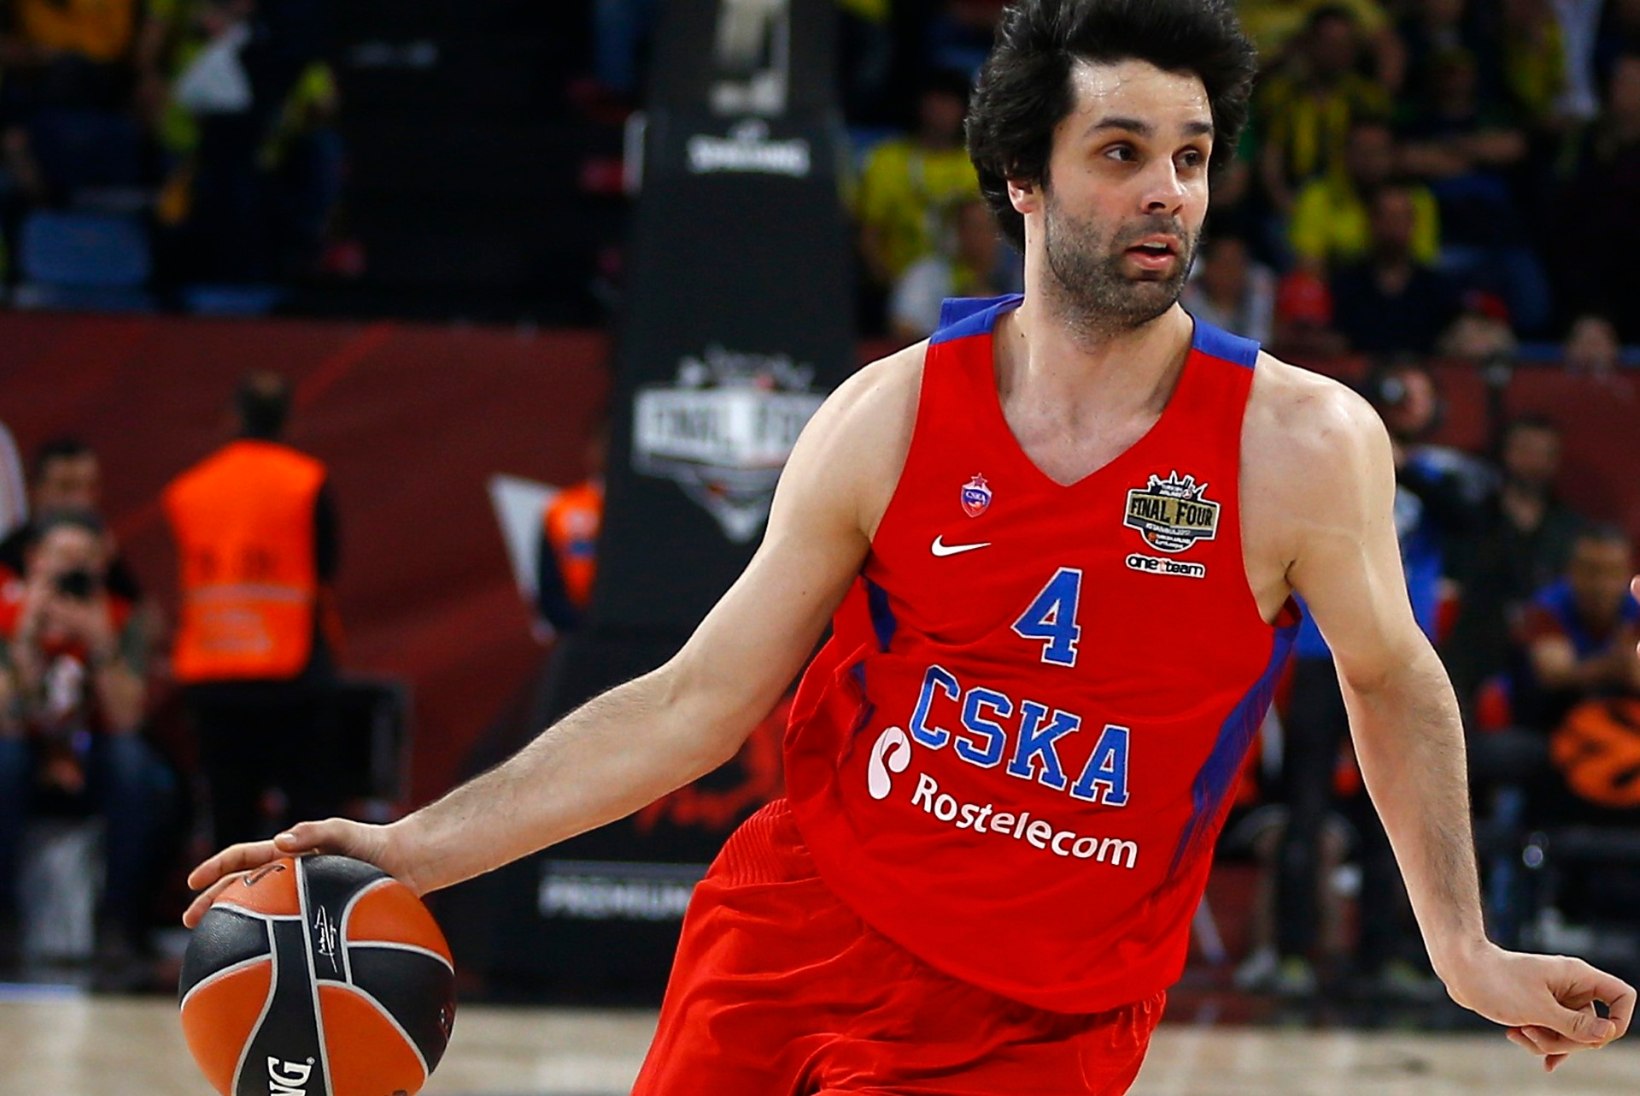 Kas CSKA tegi Teodosicile pakkumise, mis summutab ka NBA sireenide kutse?